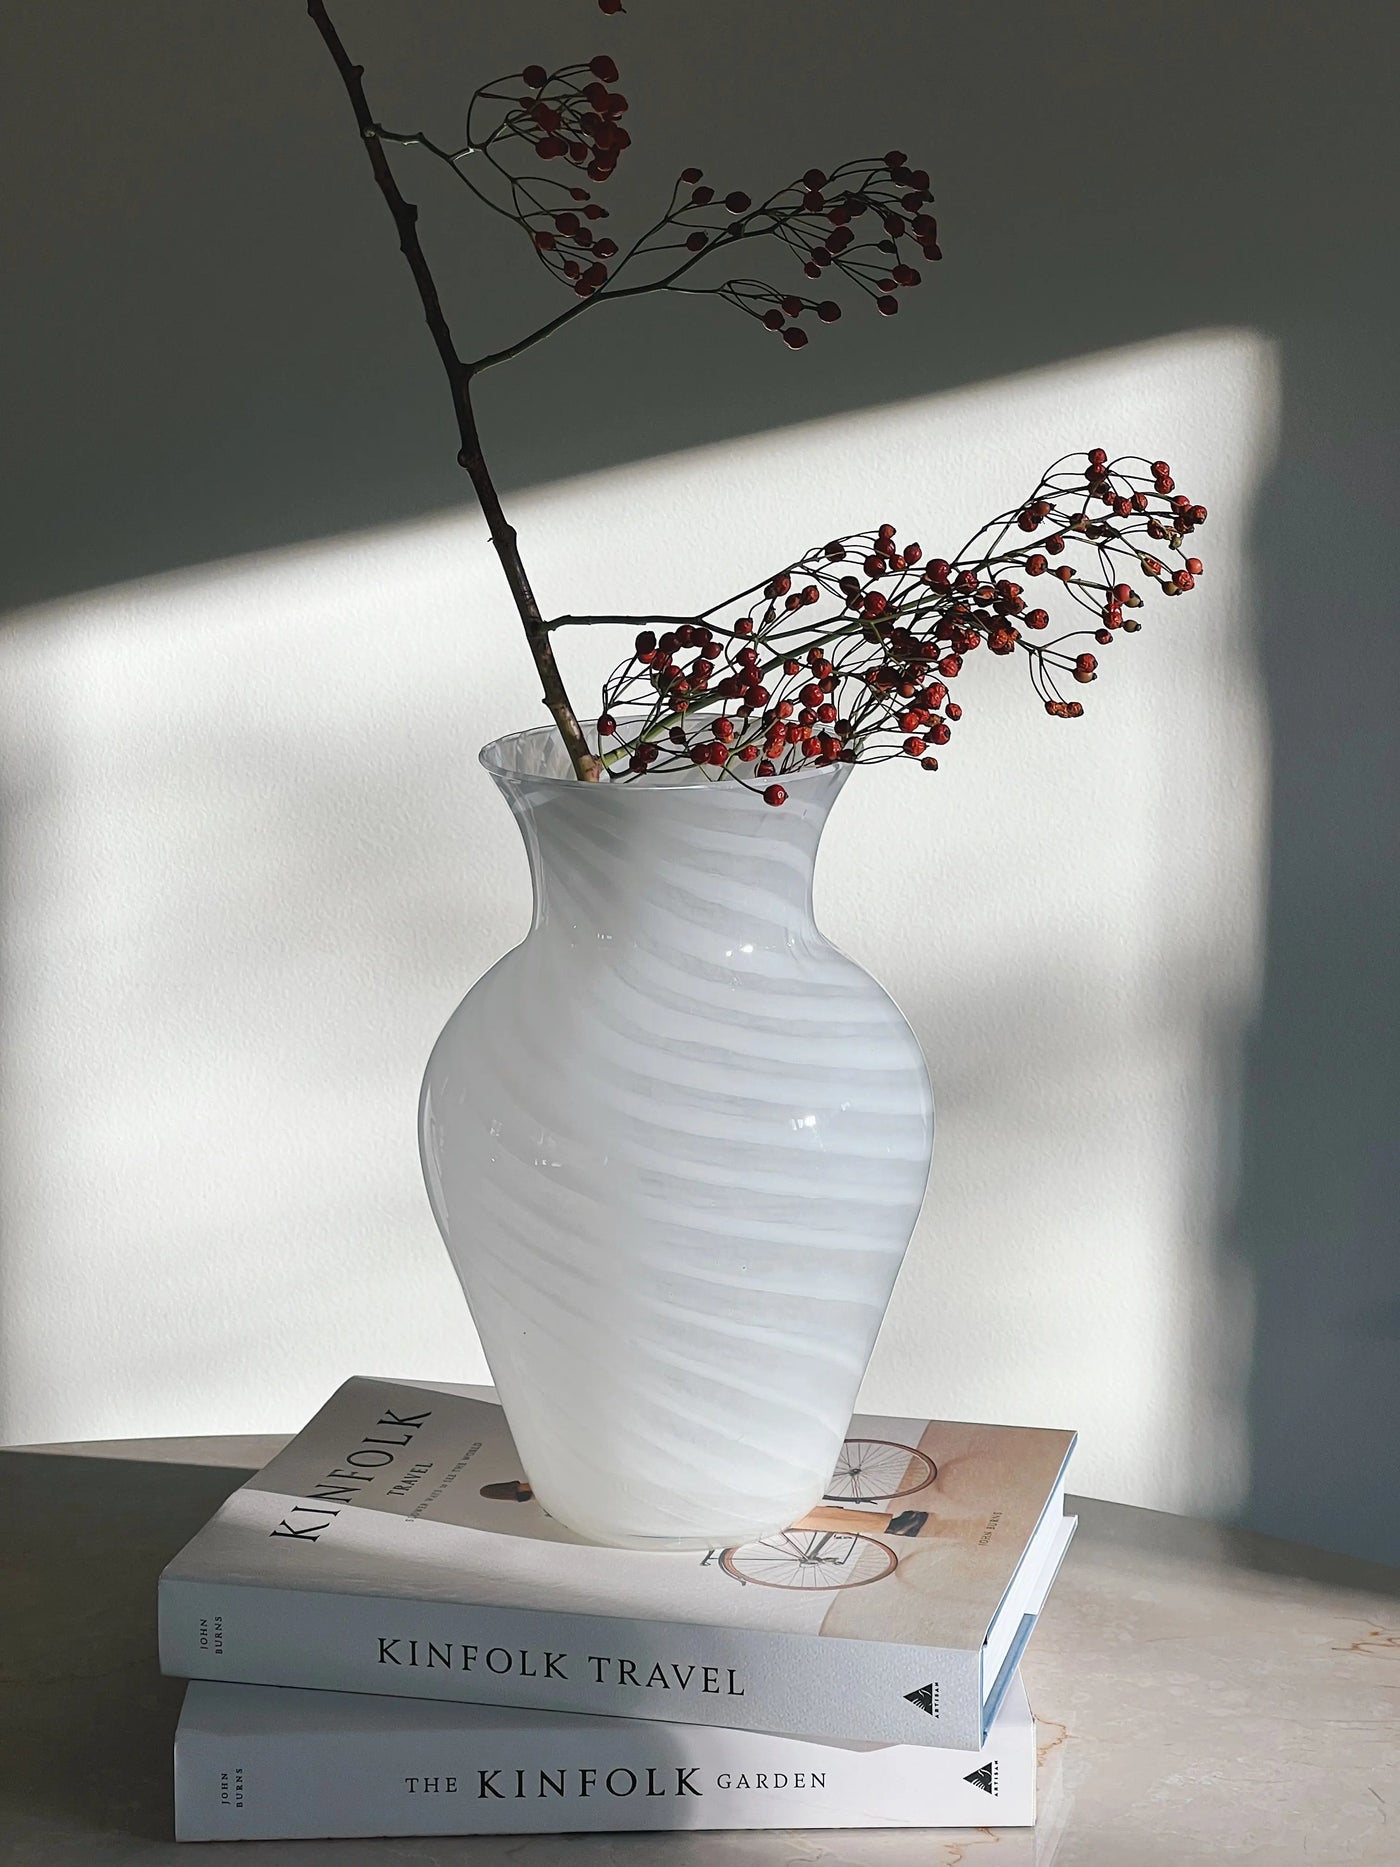 Murano Swirl Vase | Hvid H27.5 cm Murano